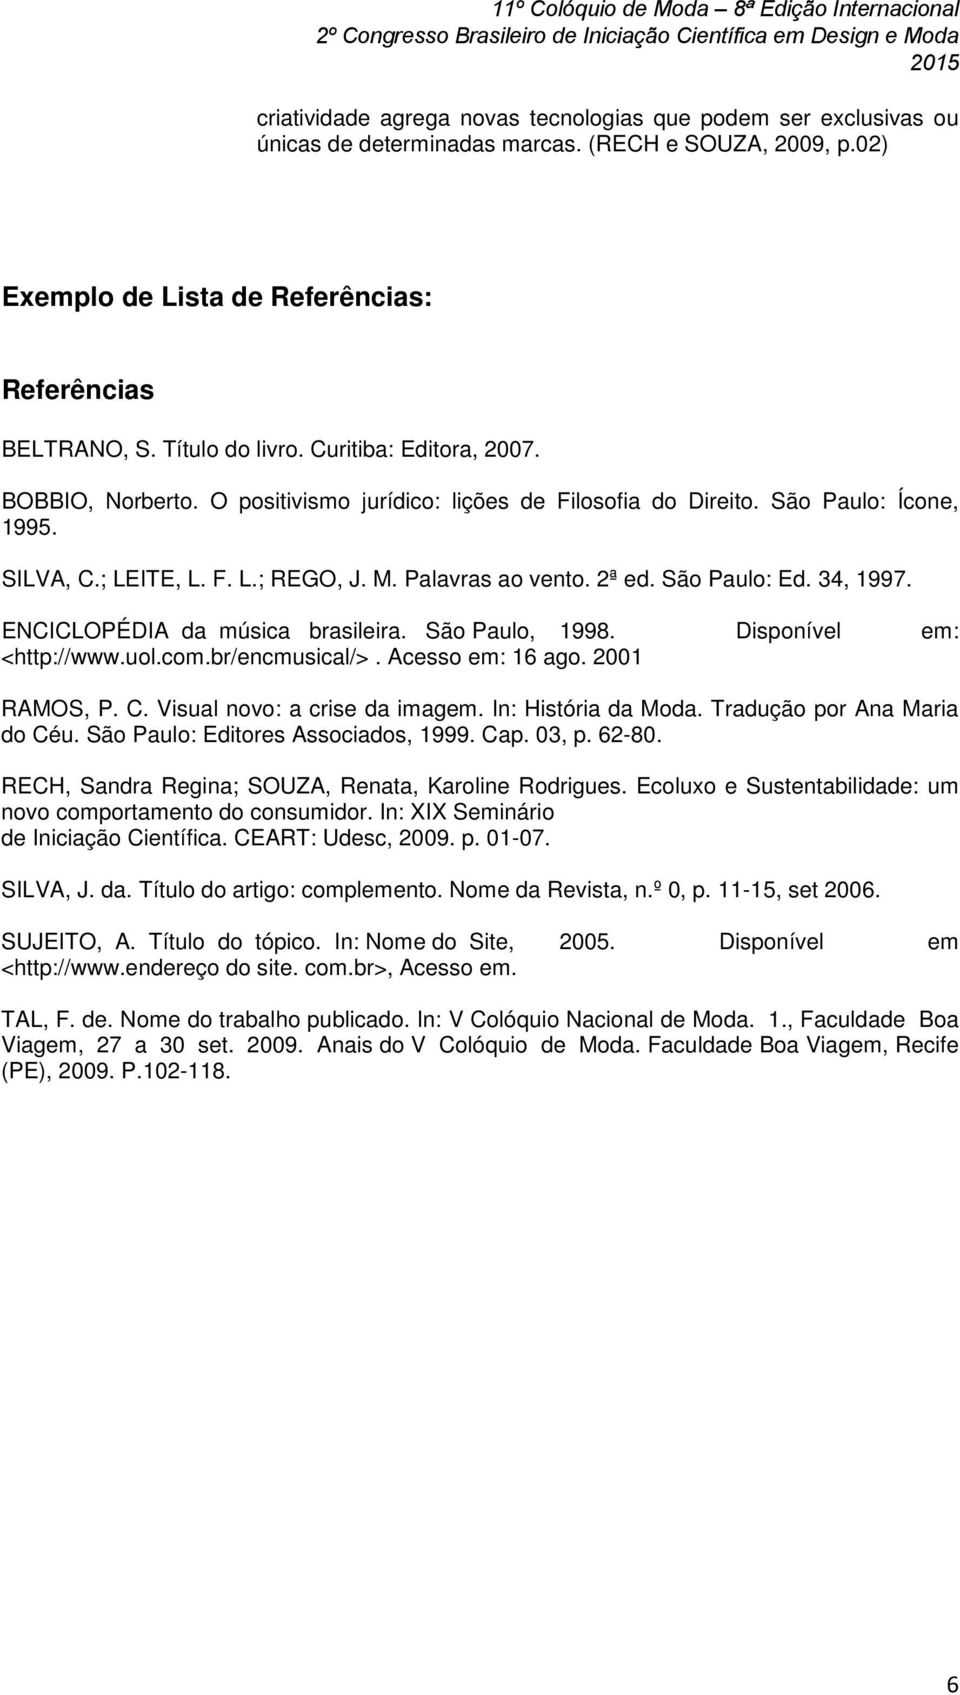 São Paulo: Ed. 34, 1997. ENCICLOPÉDIA da música brasileira. São Paulo, 1998. Disponível em: <http://www.uol.com.br/encmusical/>. Acesso em: 16 ago. 2001 RAMOS, P. C. Visual novo: a crise da imagem.